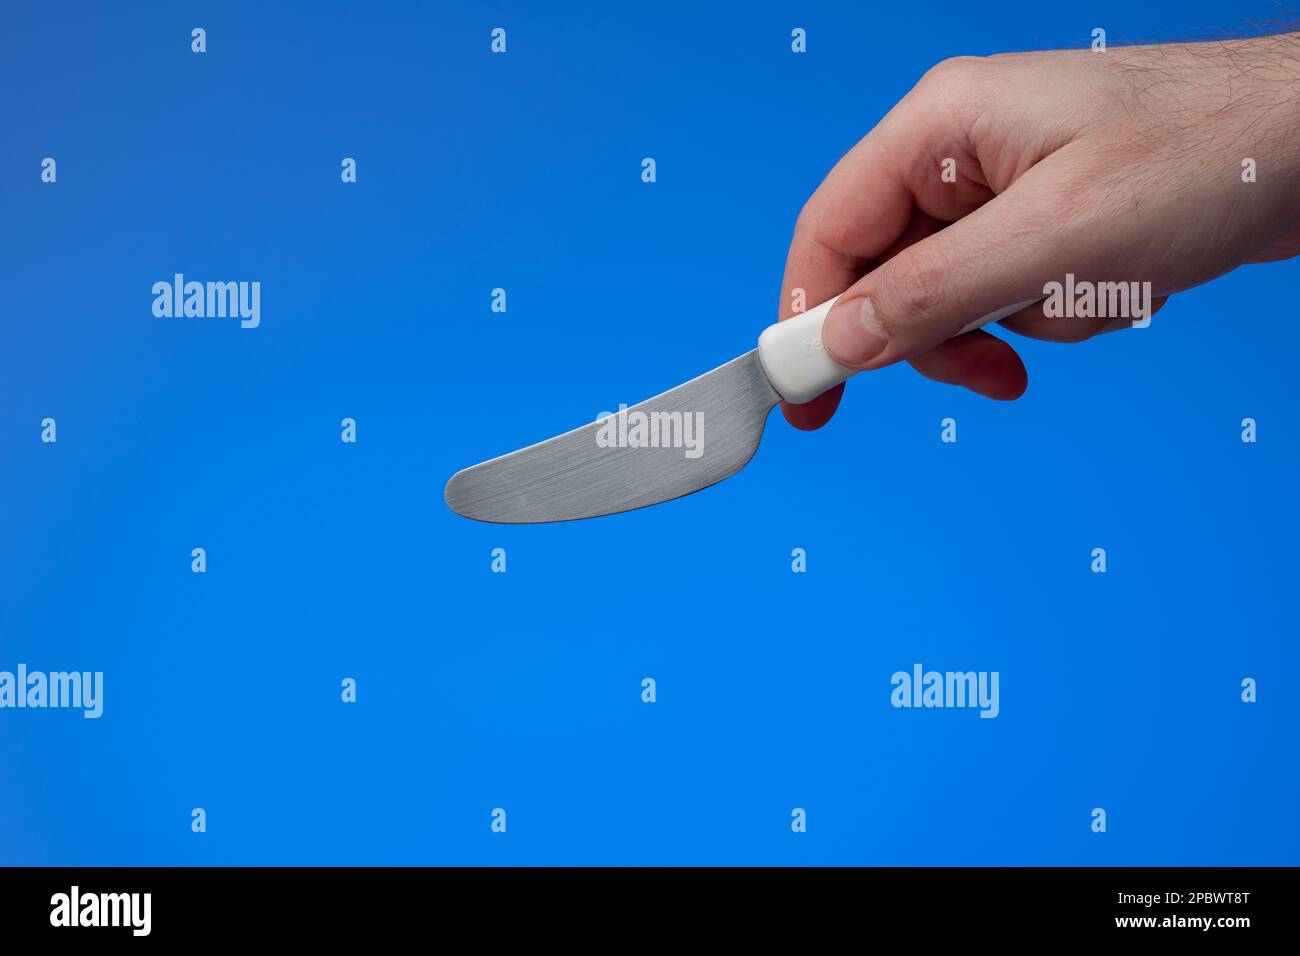 Kleines Küchenmesser mit weißem Kunststoffgriff, der von männlichen Händen gehalten wird. Nahaufnahme des Studios, isoliert auf blauem Hintergrund. Stockfoto